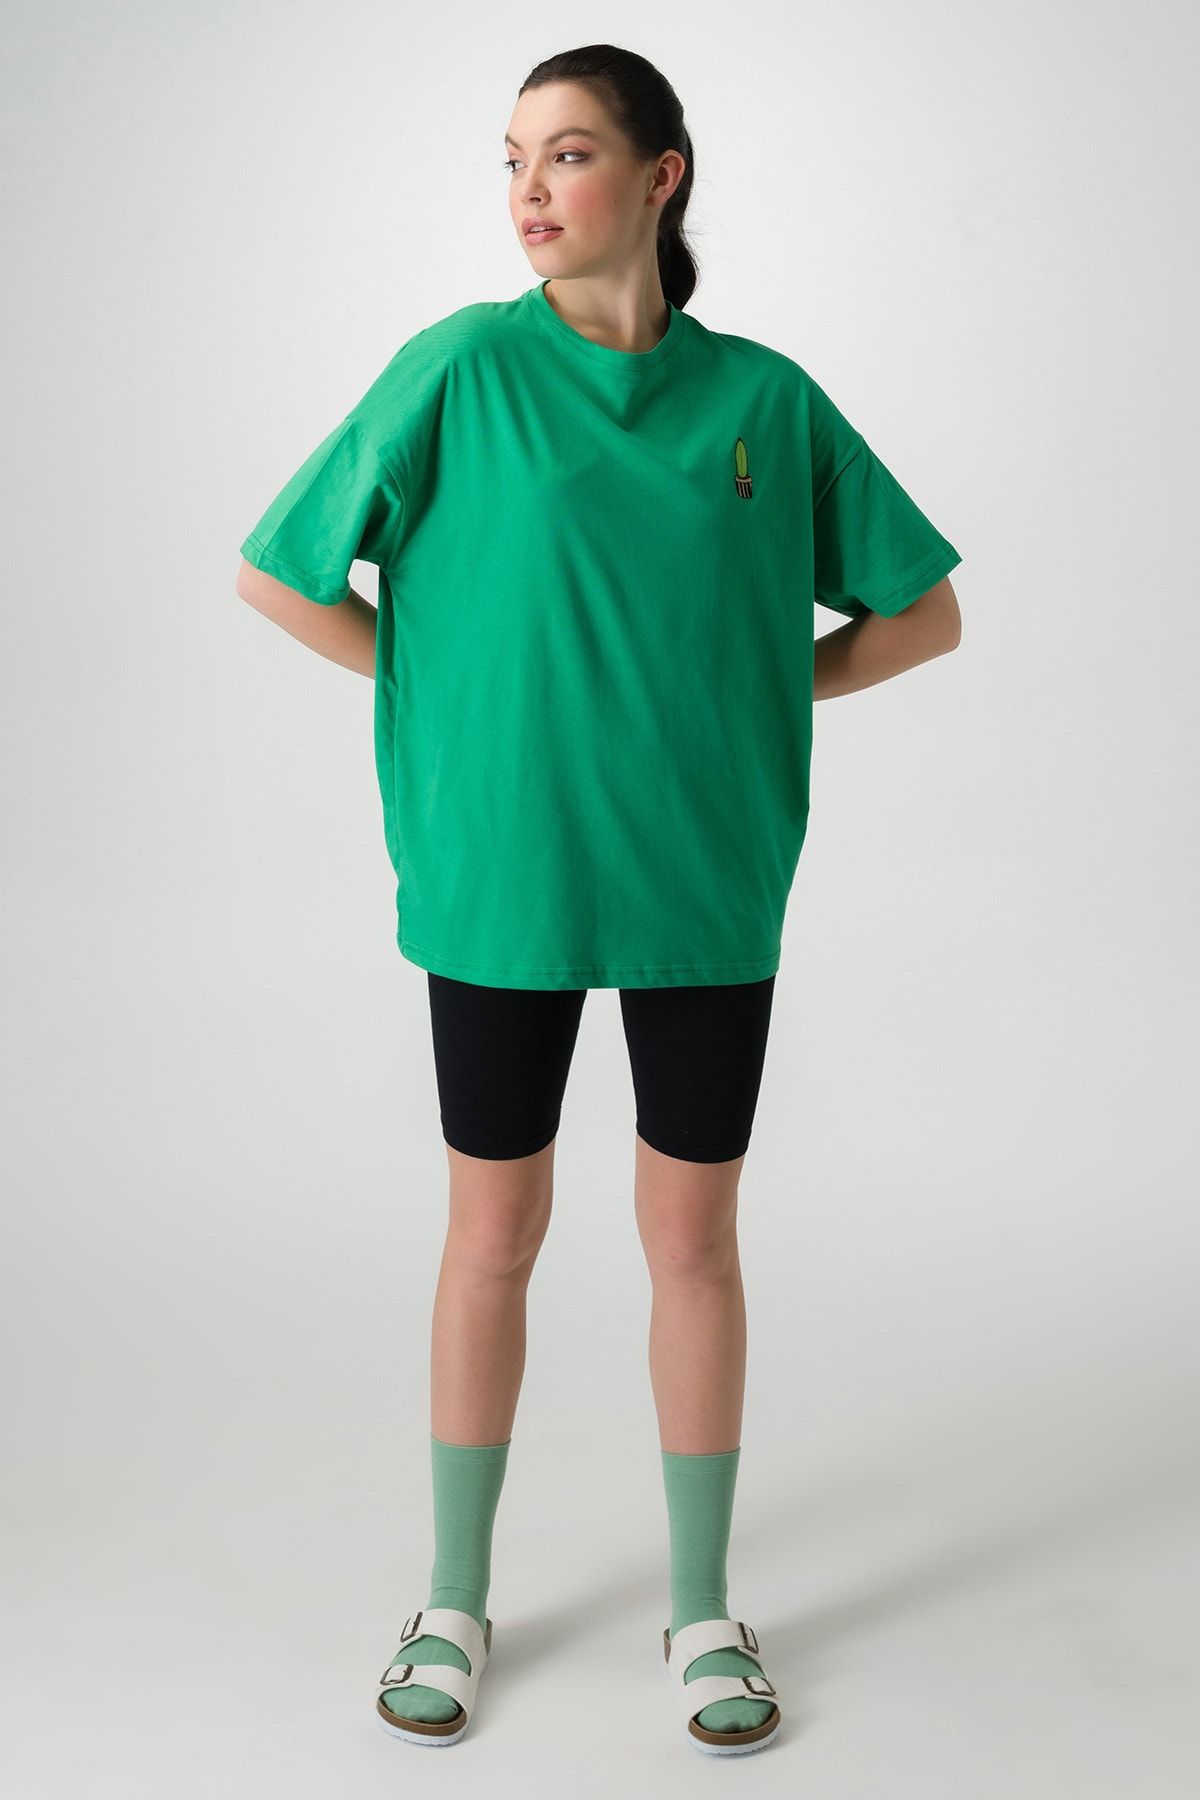 Runever Koyu Yeşil Oversize Nakış Detaylı Kadın T-shirt Biker Tayt Takım 22093